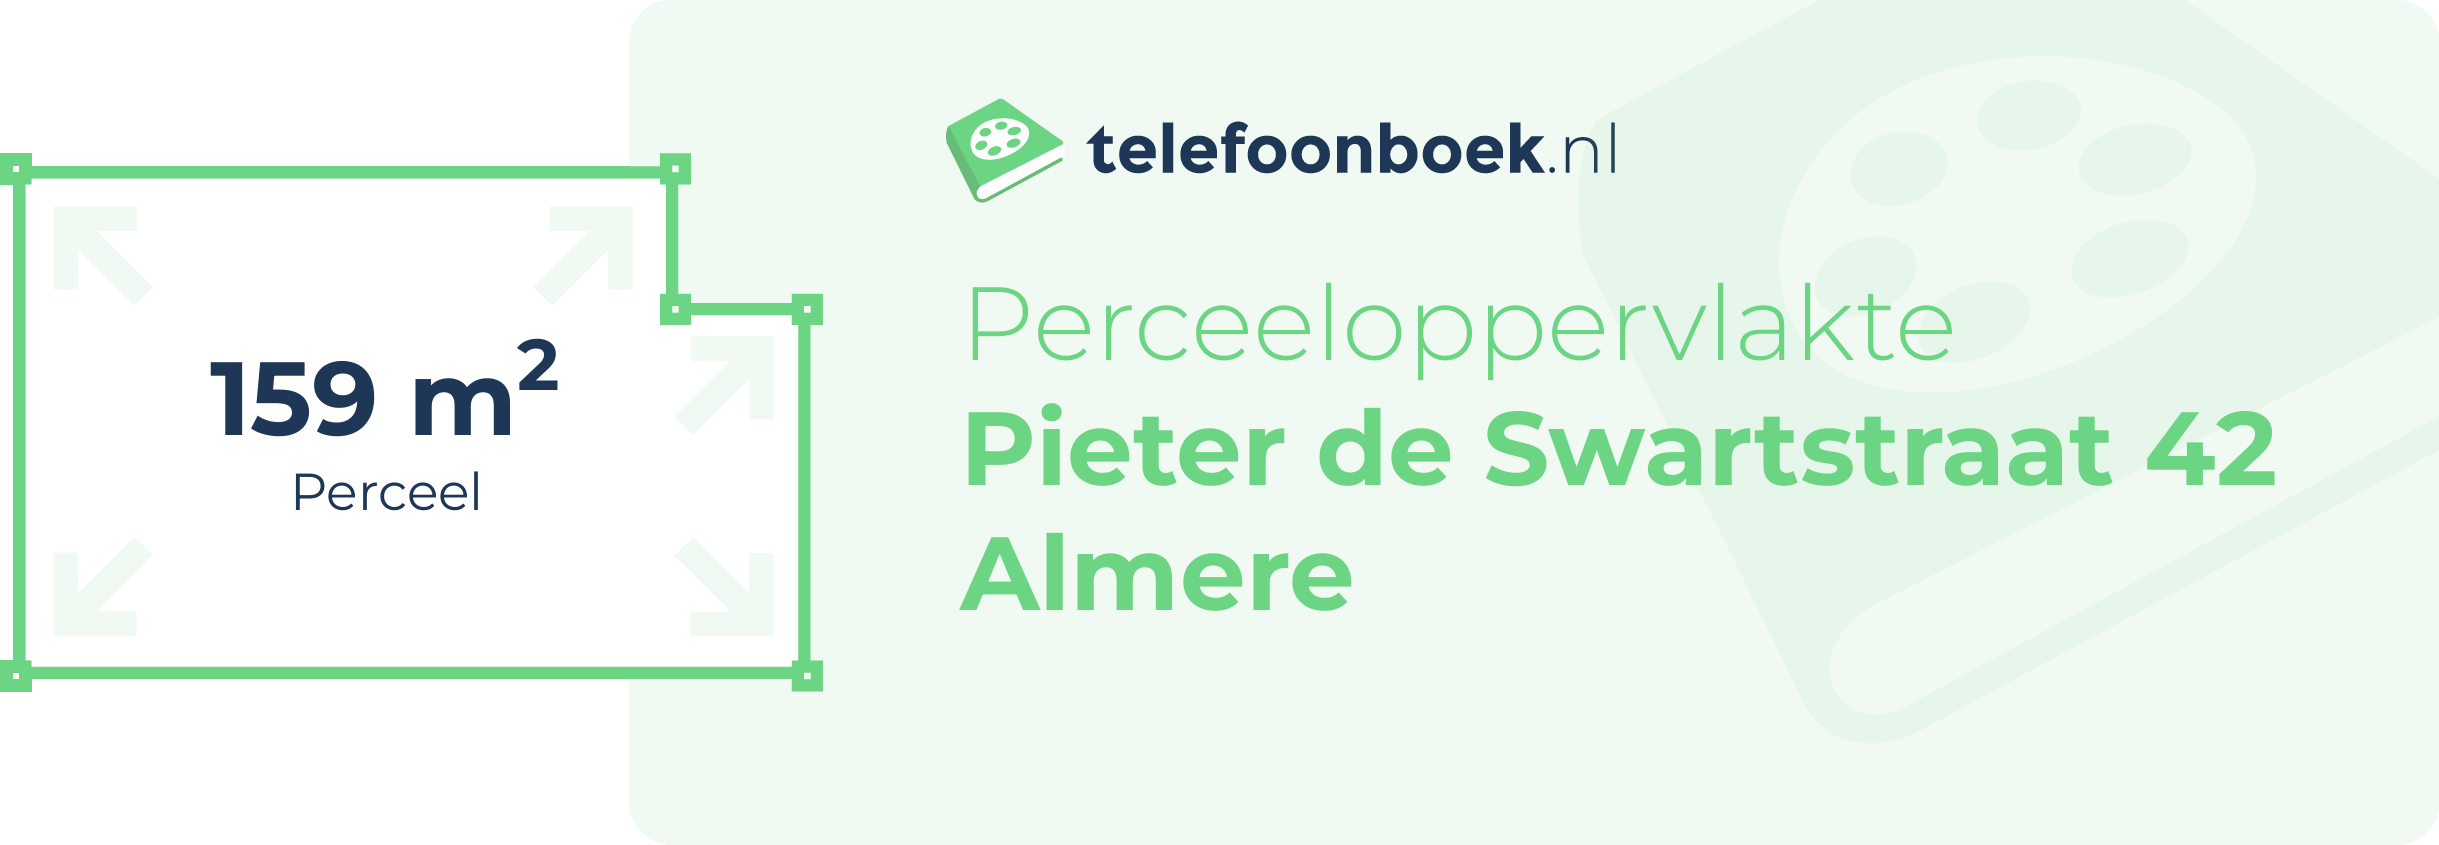 Perceeloppervlakte Pieter De Swartstraat 42 Almere